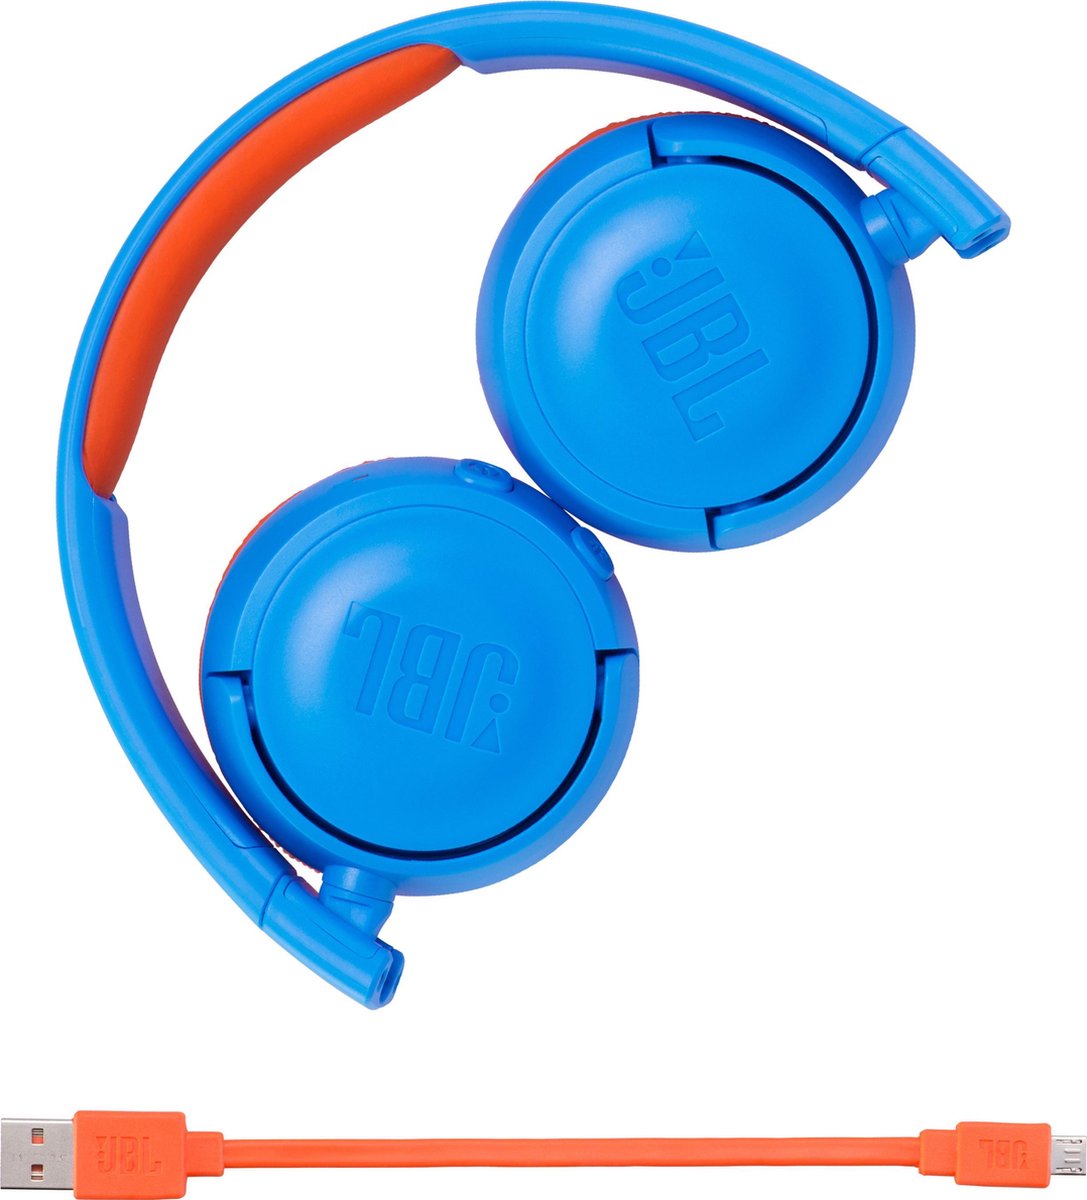 Casque Bluetooth pour Enfants JBL JR300BT (Bleu/Orange) à prix bas